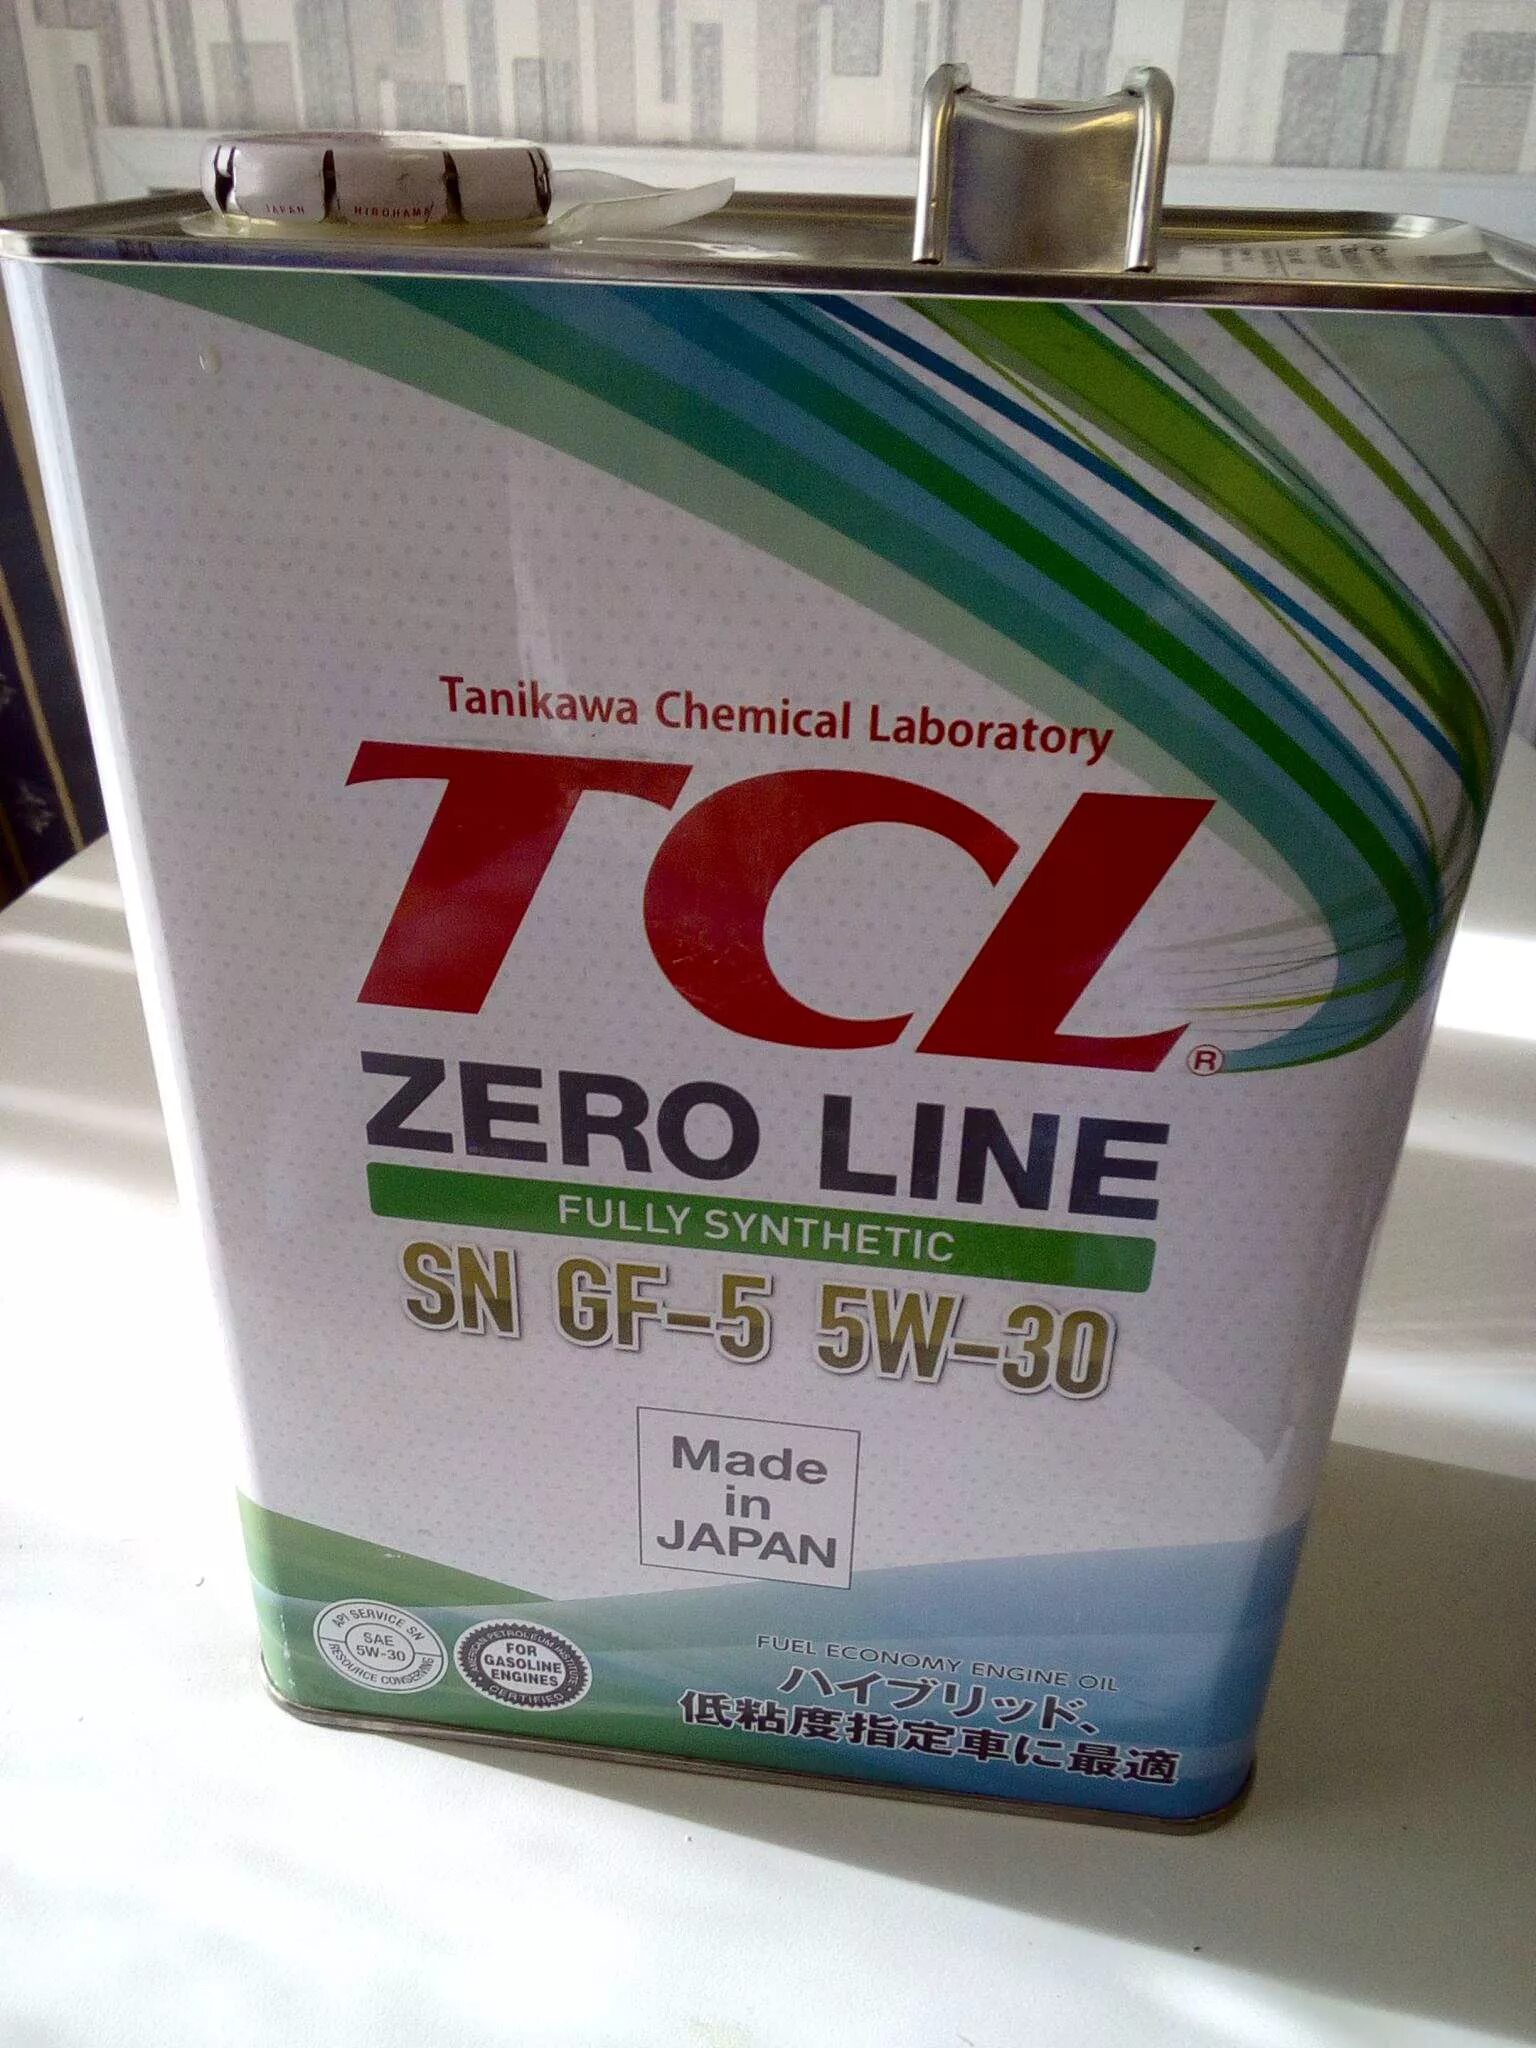 TCL Zero line 5w30. Масло TCL Zero line 5w-30. TCL SN gf-5 5w-30. TCL 5w-30 gf-5. Моторное масло tcl 5w30